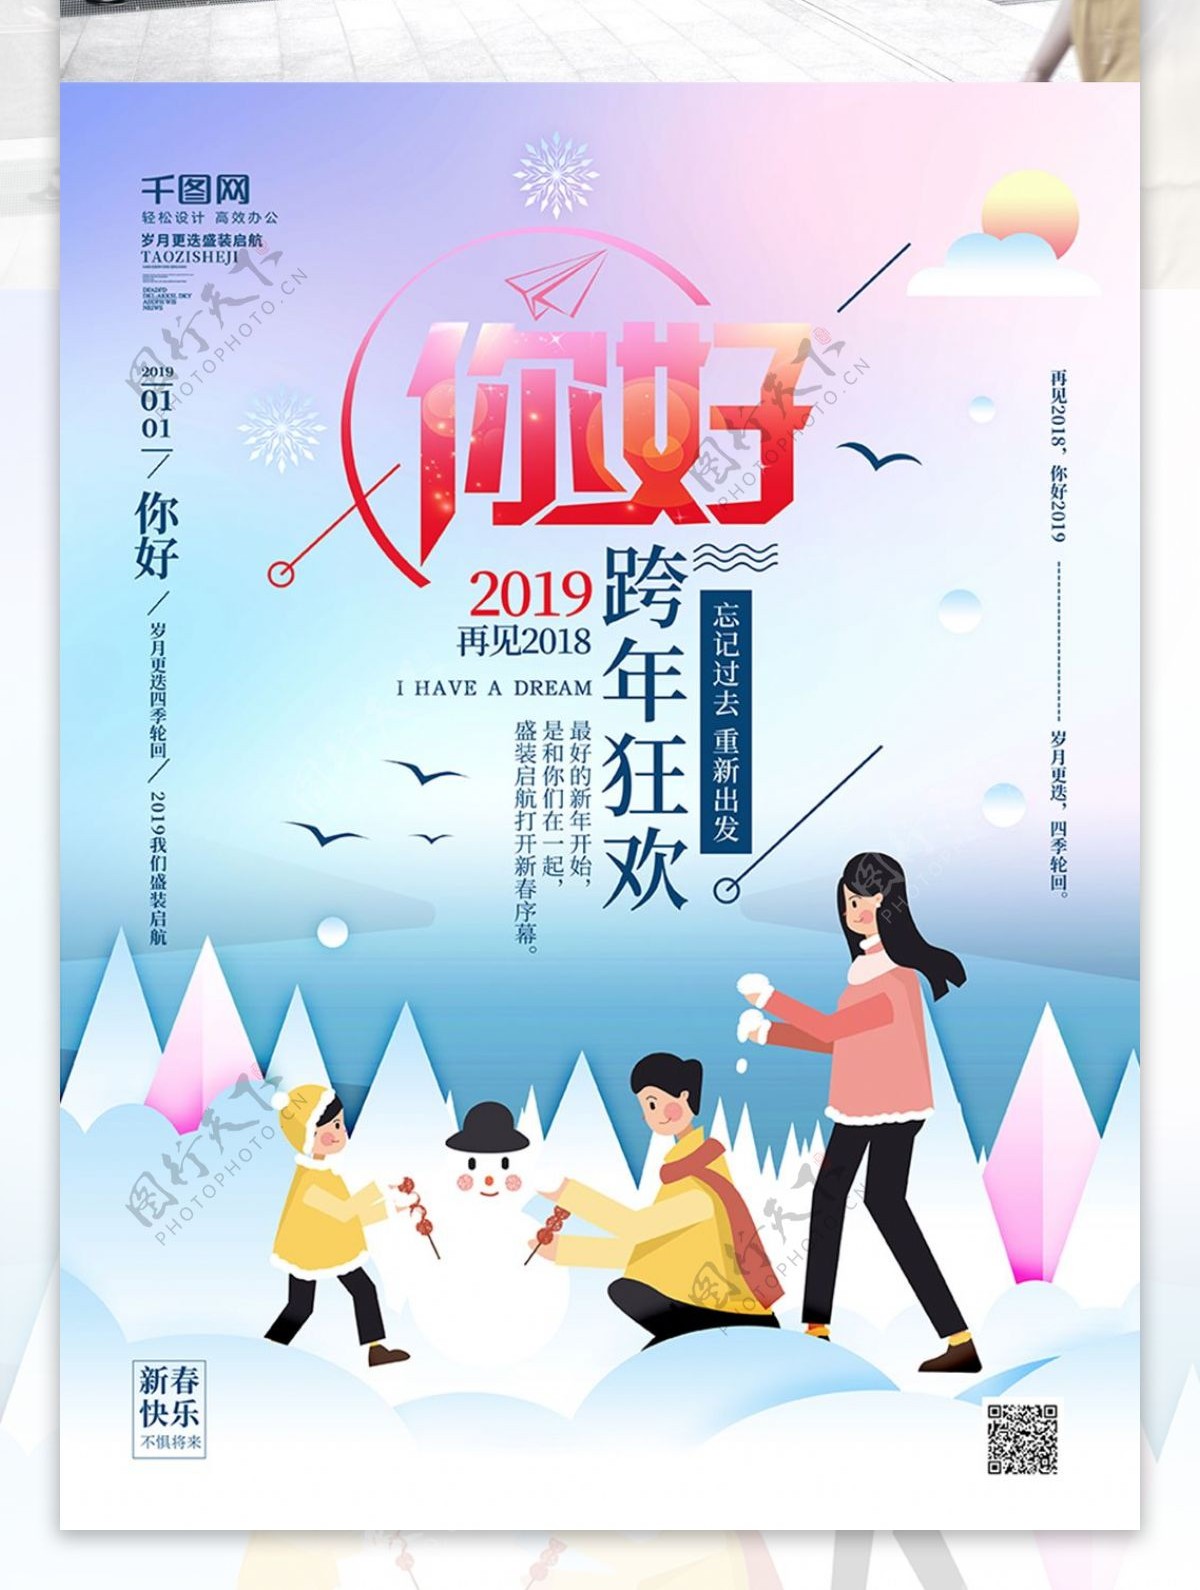 原创手绘梦幻你好2019跨年狂欢节日海报